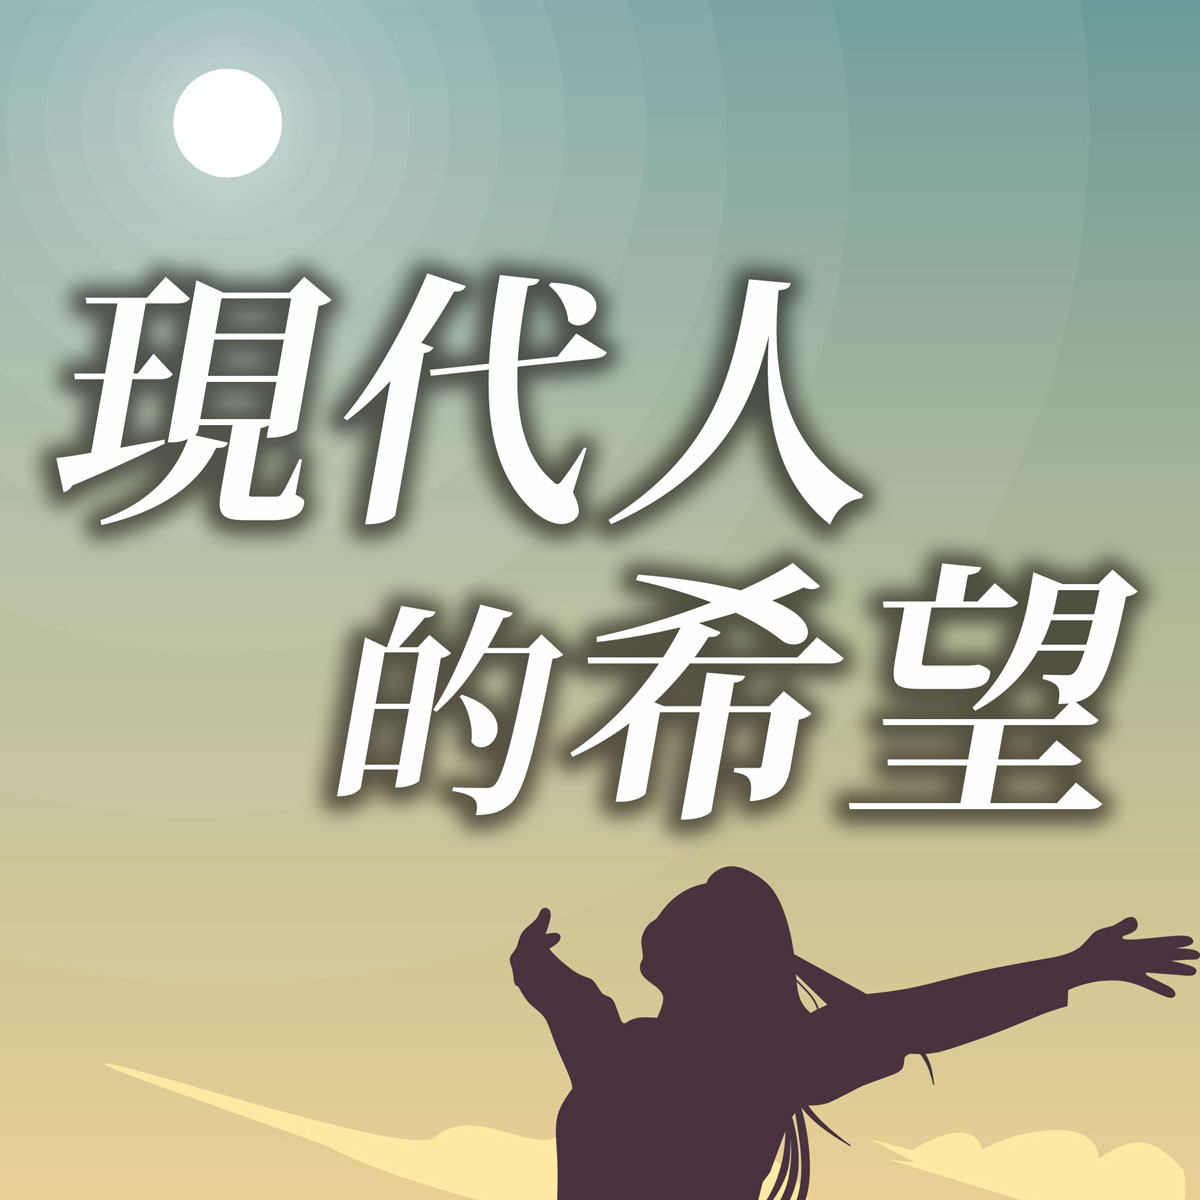 現代人的希望 - 江傳道系列(六)富足的人生封面圖